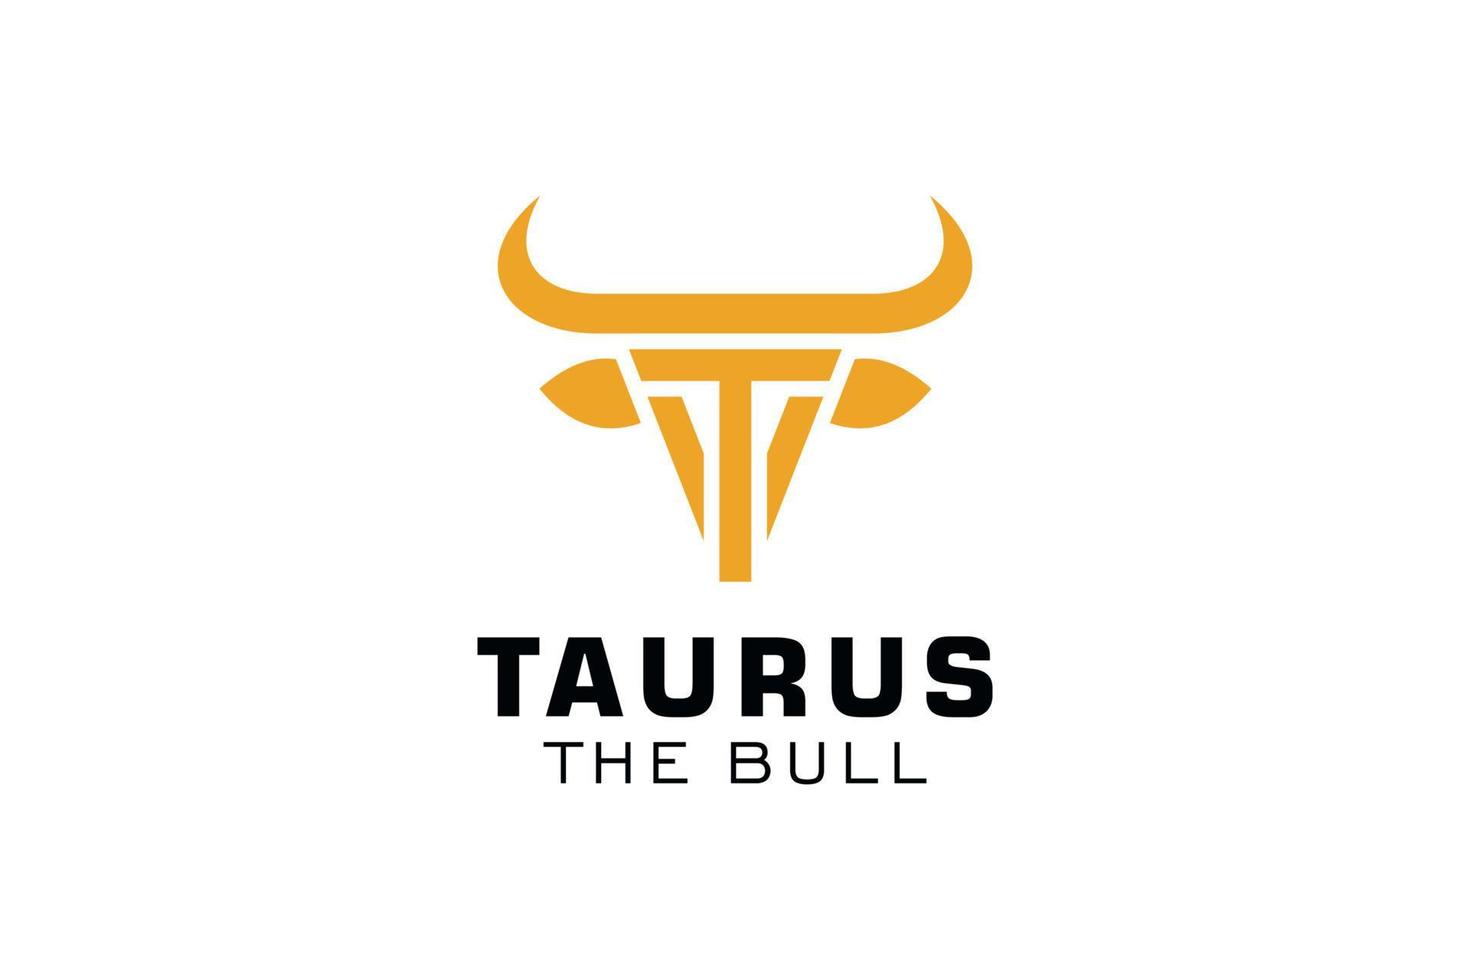 logotipo da letra t, logotipo do touro, logotipo da cabeça do touro, elemento de modelo de design do logotipo do monograma vetor